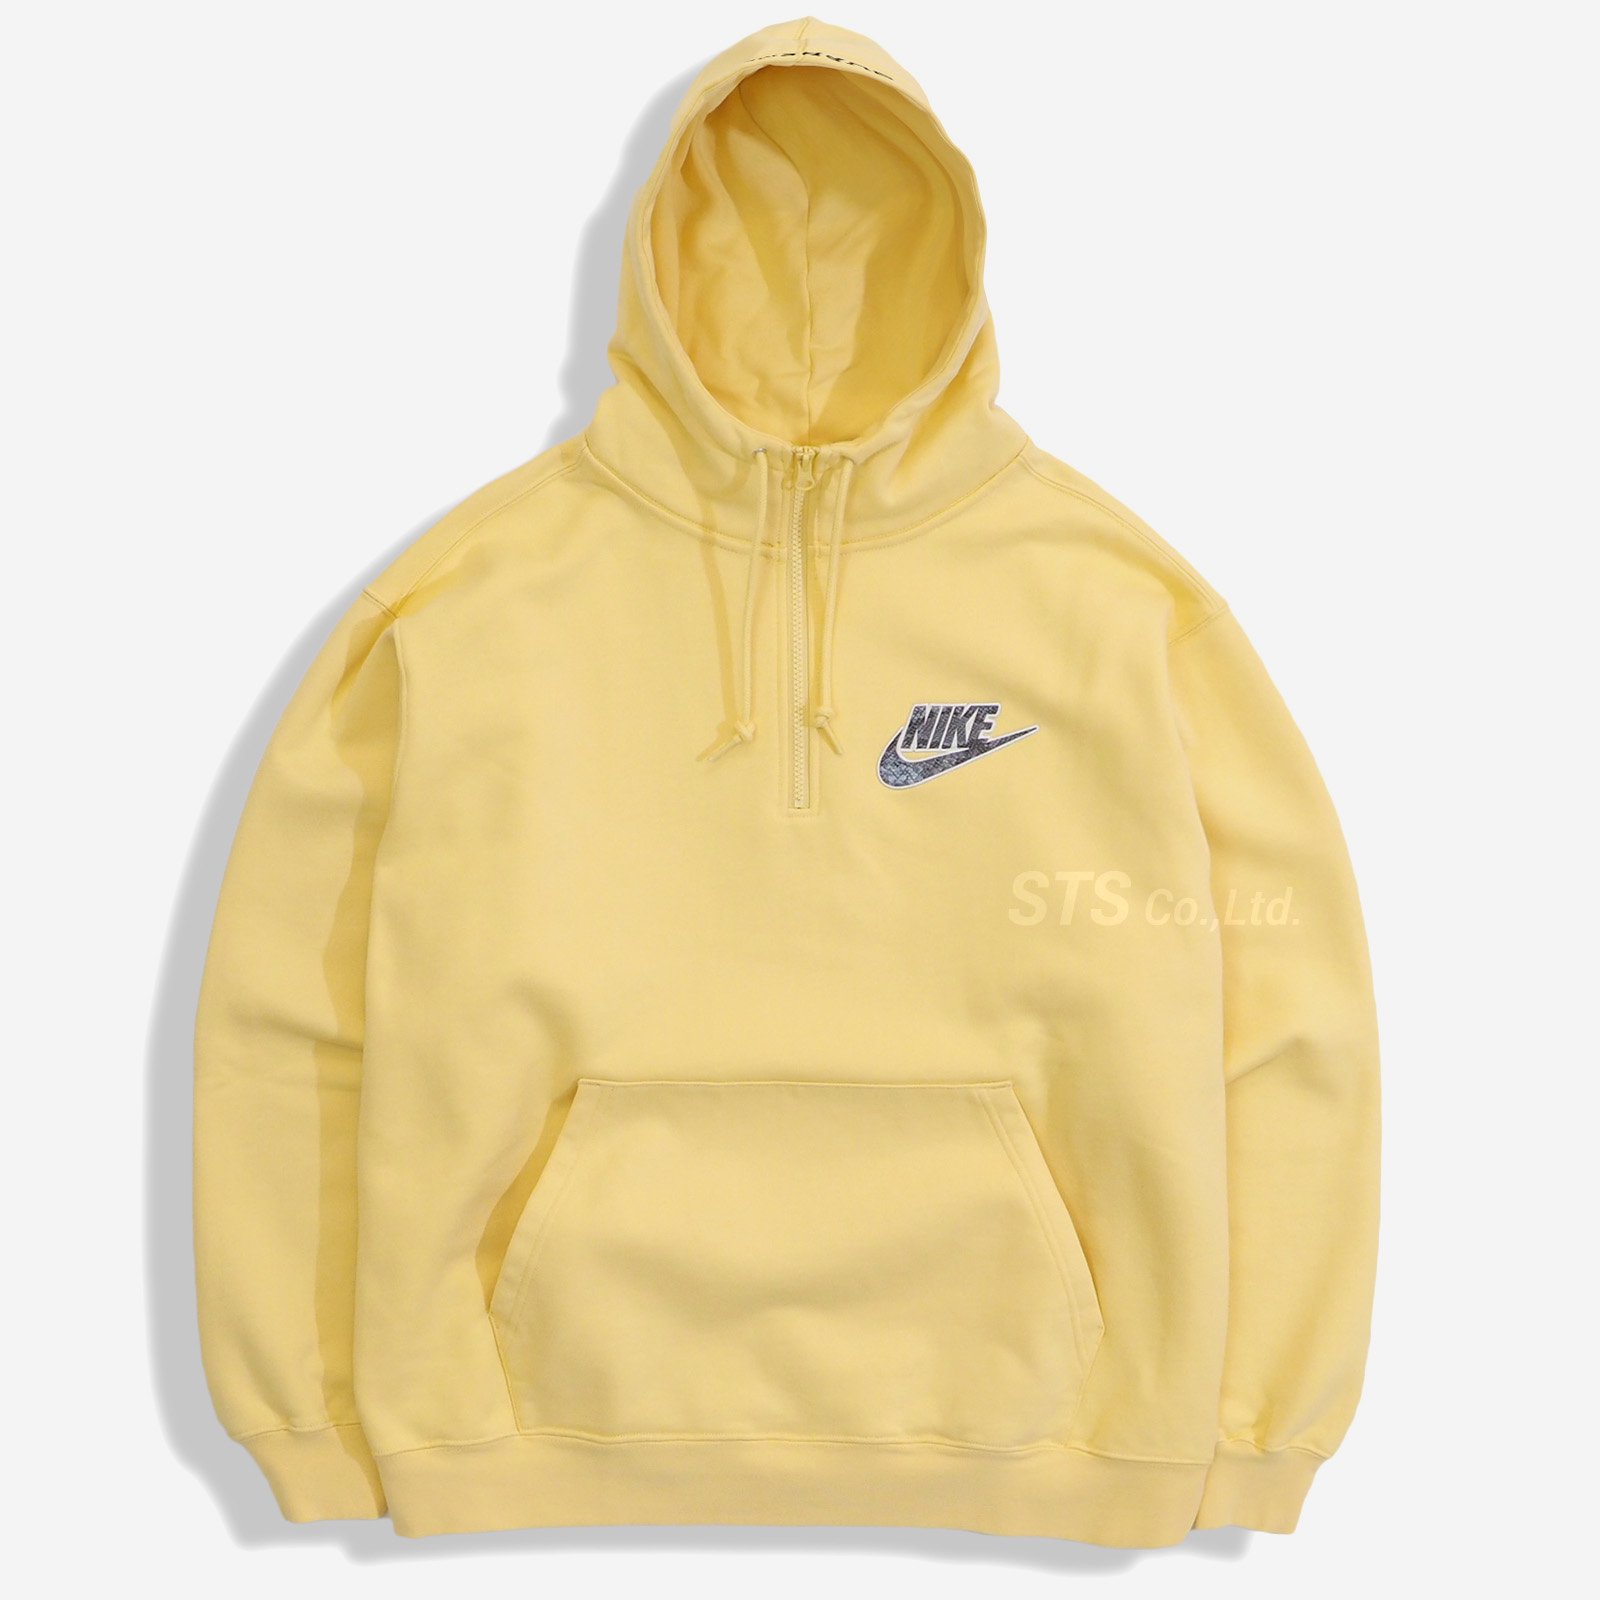 Supreme/Nike Half Zip Hooded Sweatshirt - ParkSIDER